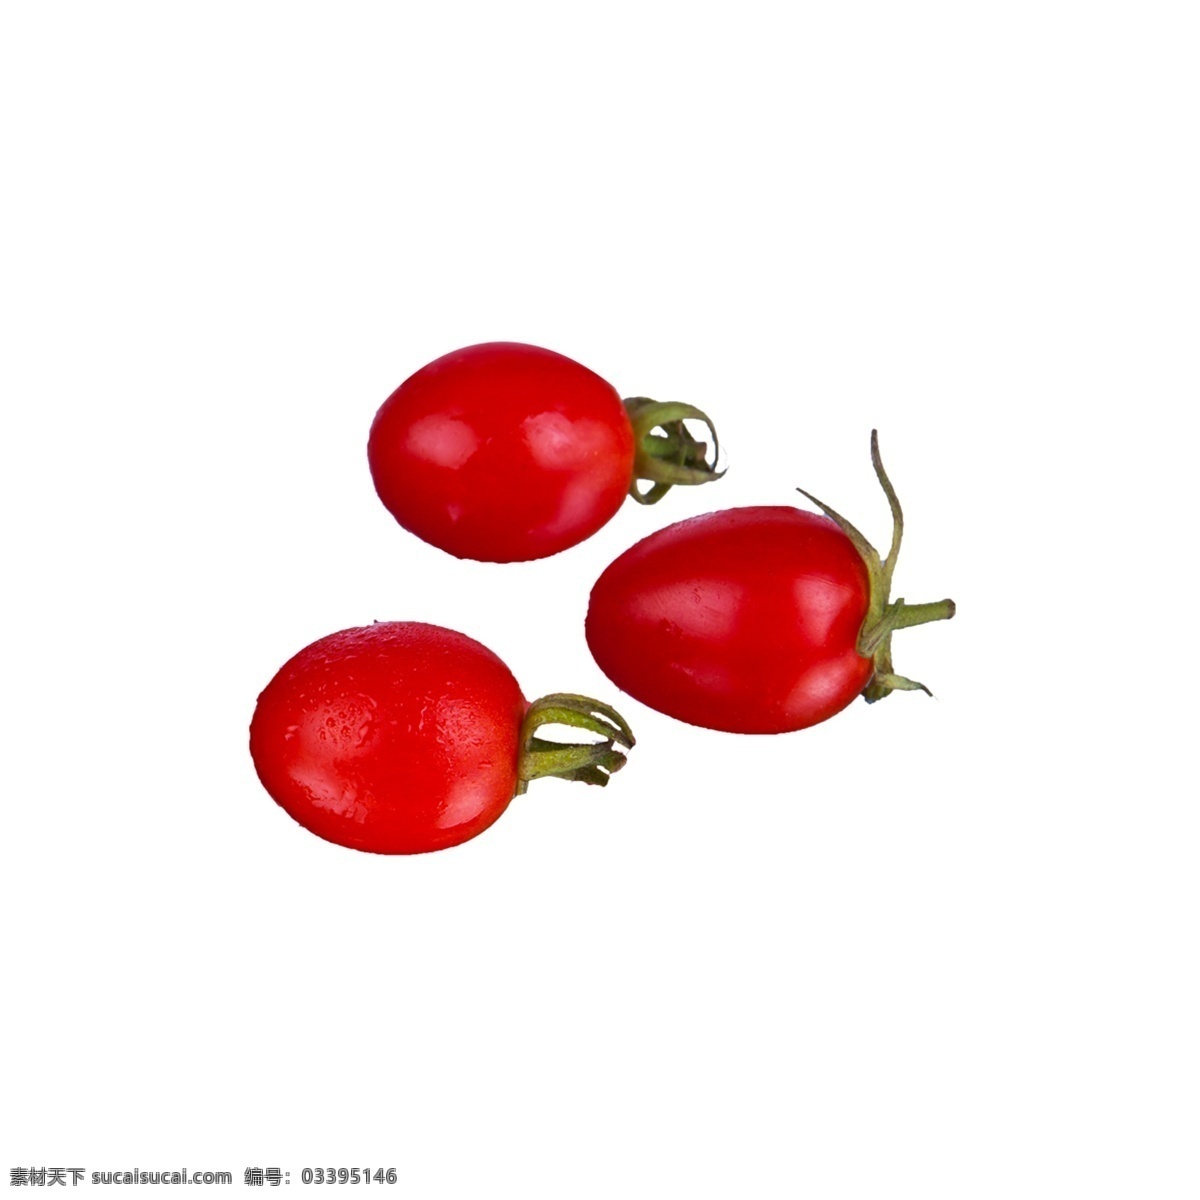 小 番茄 免 抠 小番茄 小番茄免抠 营养 蔬菜 新鲜 红色 植物 实物拍摄 摆拍 绿色叶子 酸甜